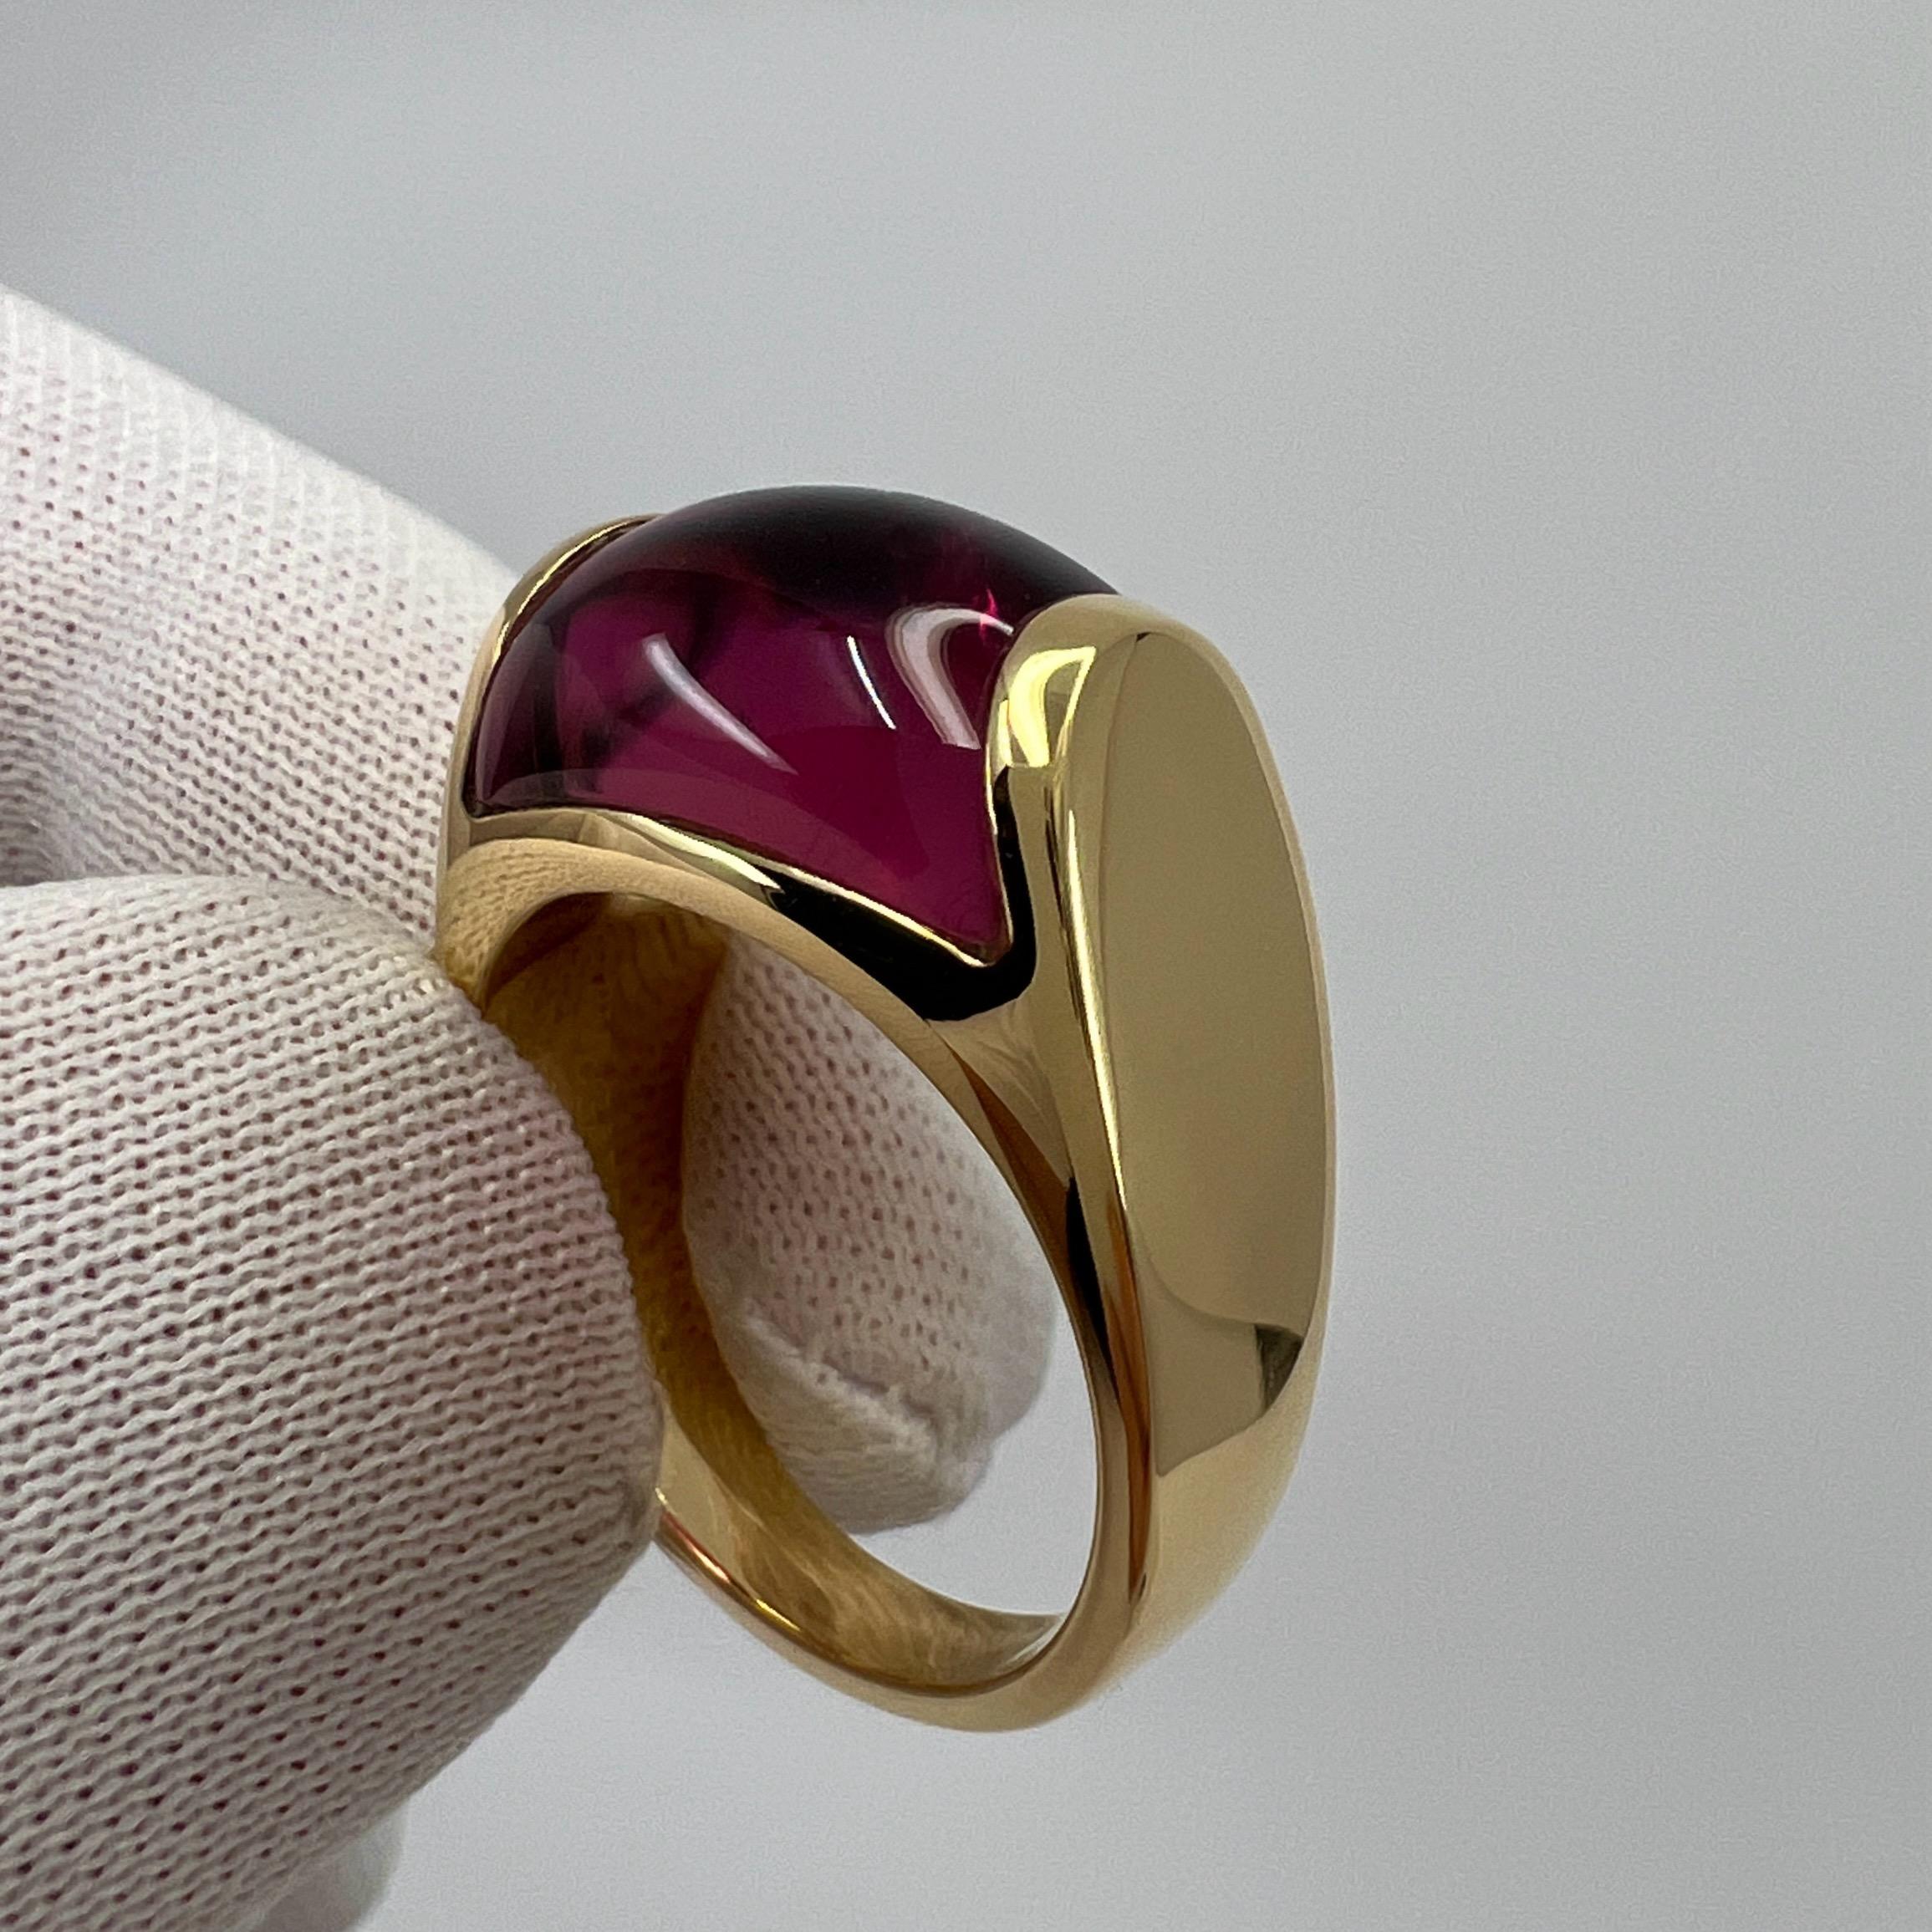 Rare Bvlgari Tronchetto 18k Yellow Gold Rubellite Pink Tourmaline Ring with Box 2